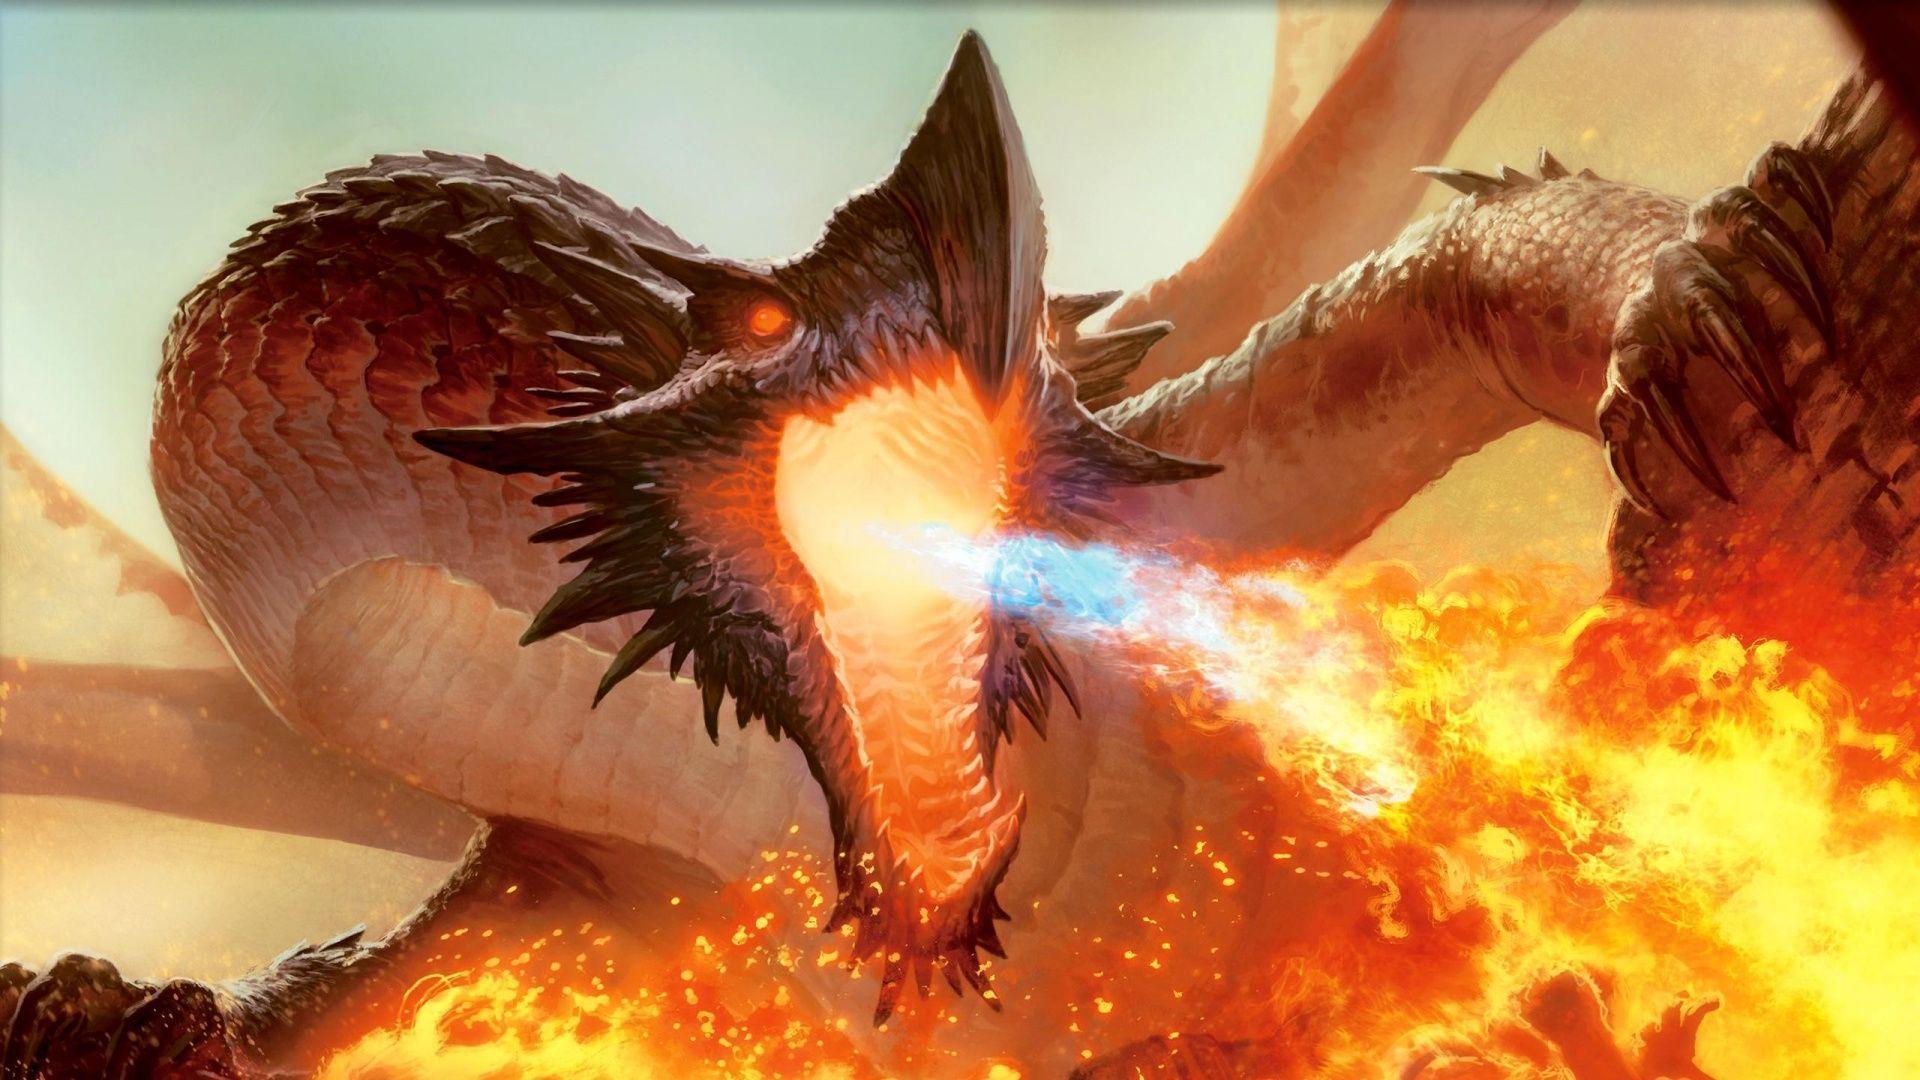 Fire breathing Dragon Wallpaper